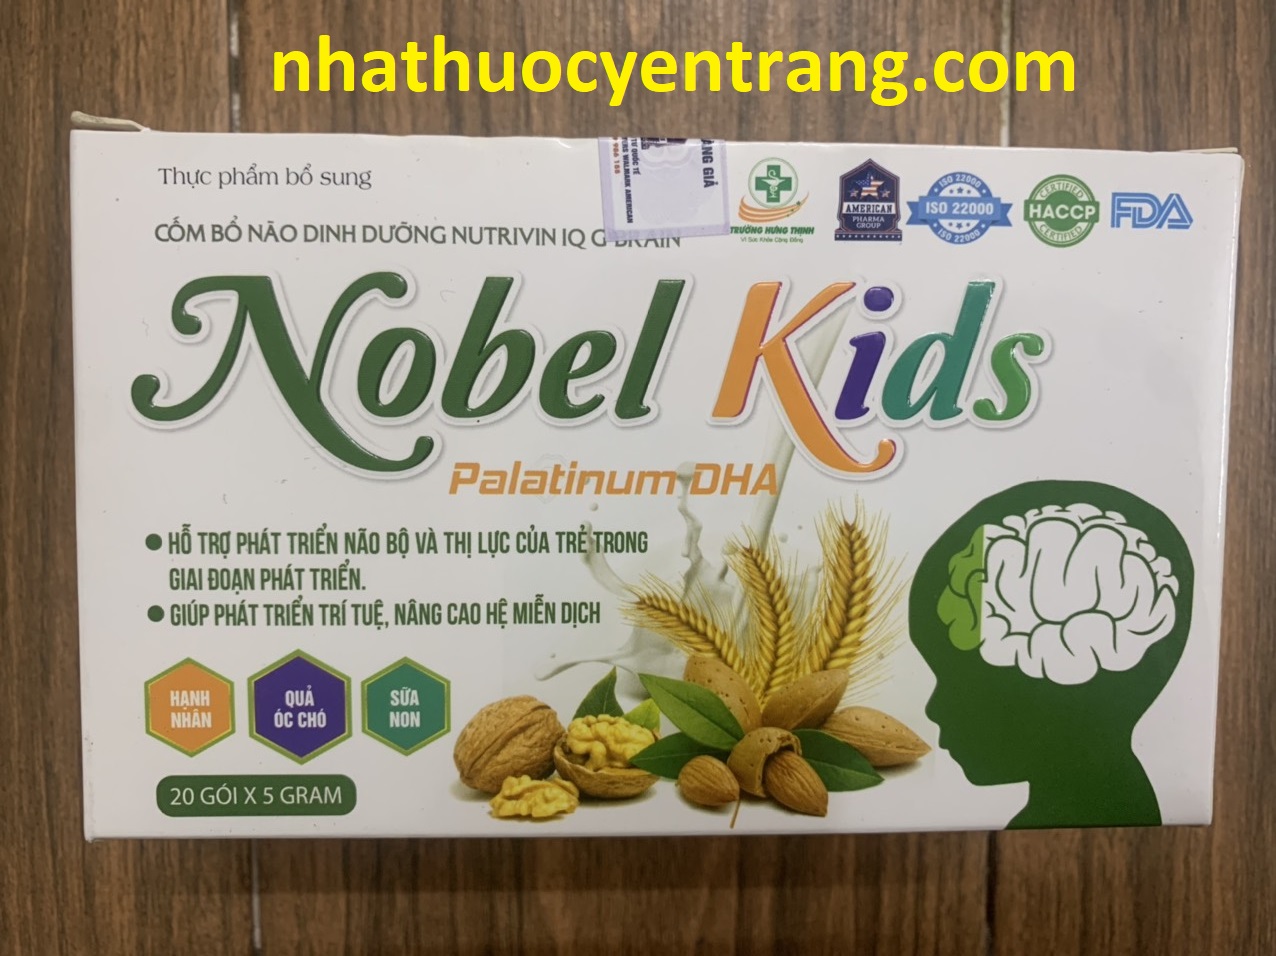 Nobel Kids Palatinum DHA